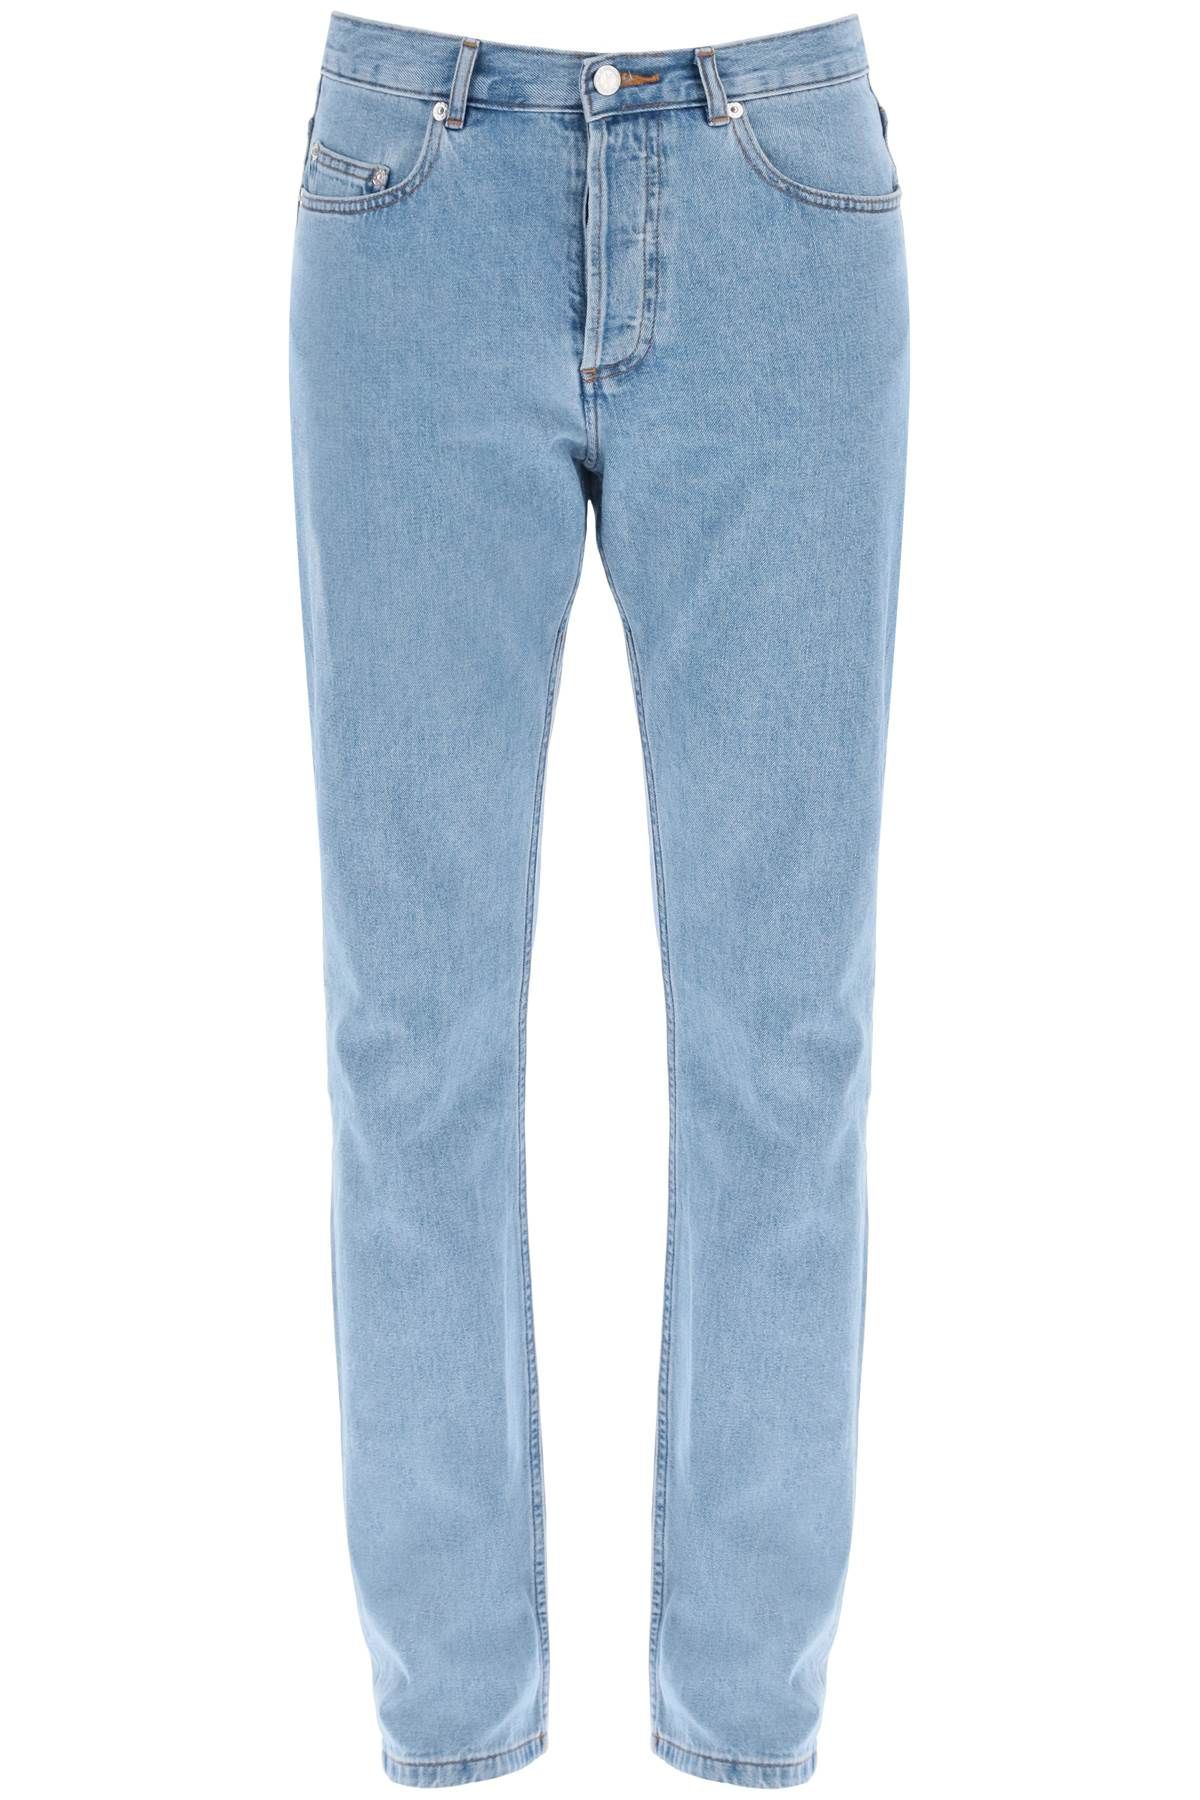 Shop Apc Fit Jeans In Light Blue